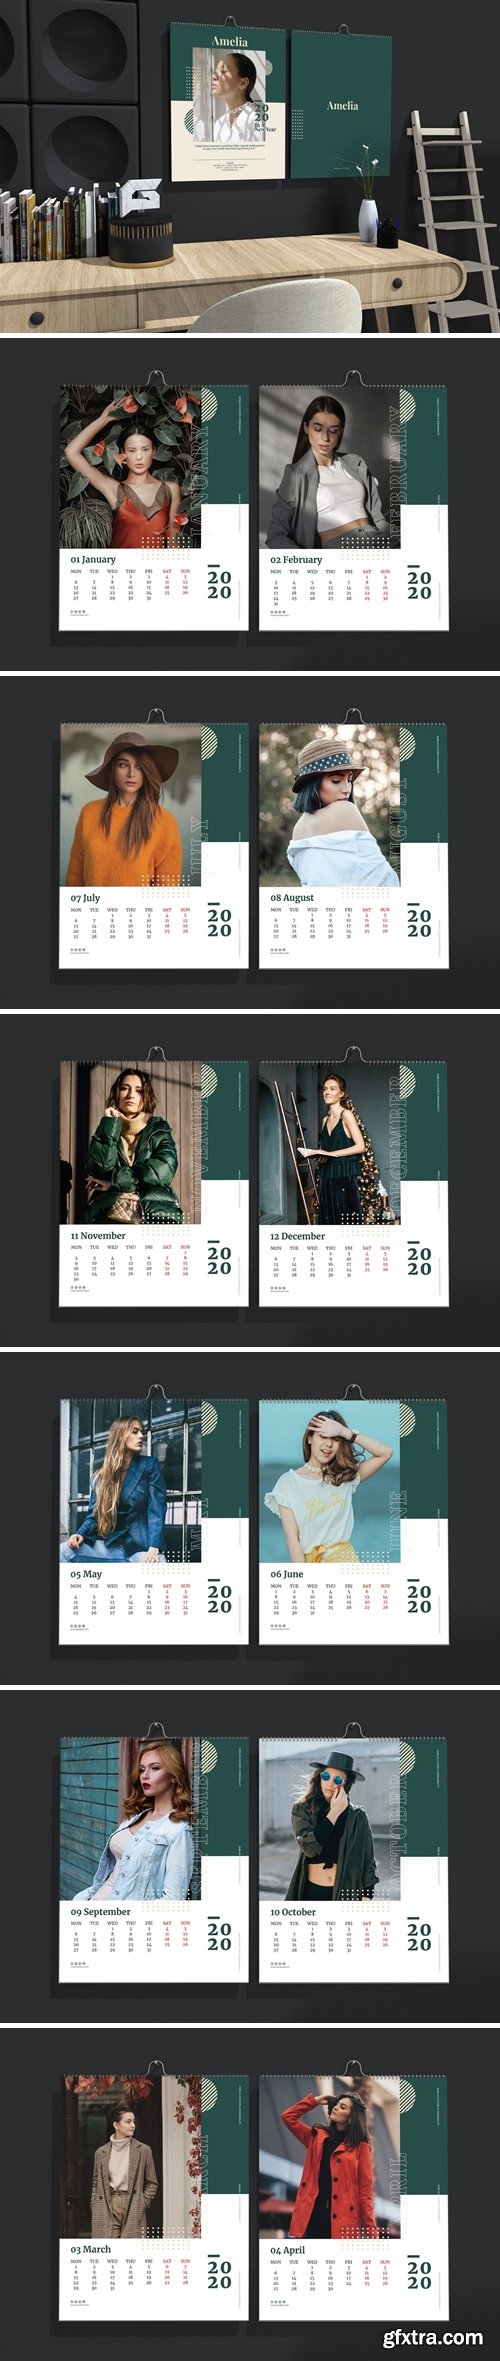 Amelia - Fashion Wall Calendar 2020